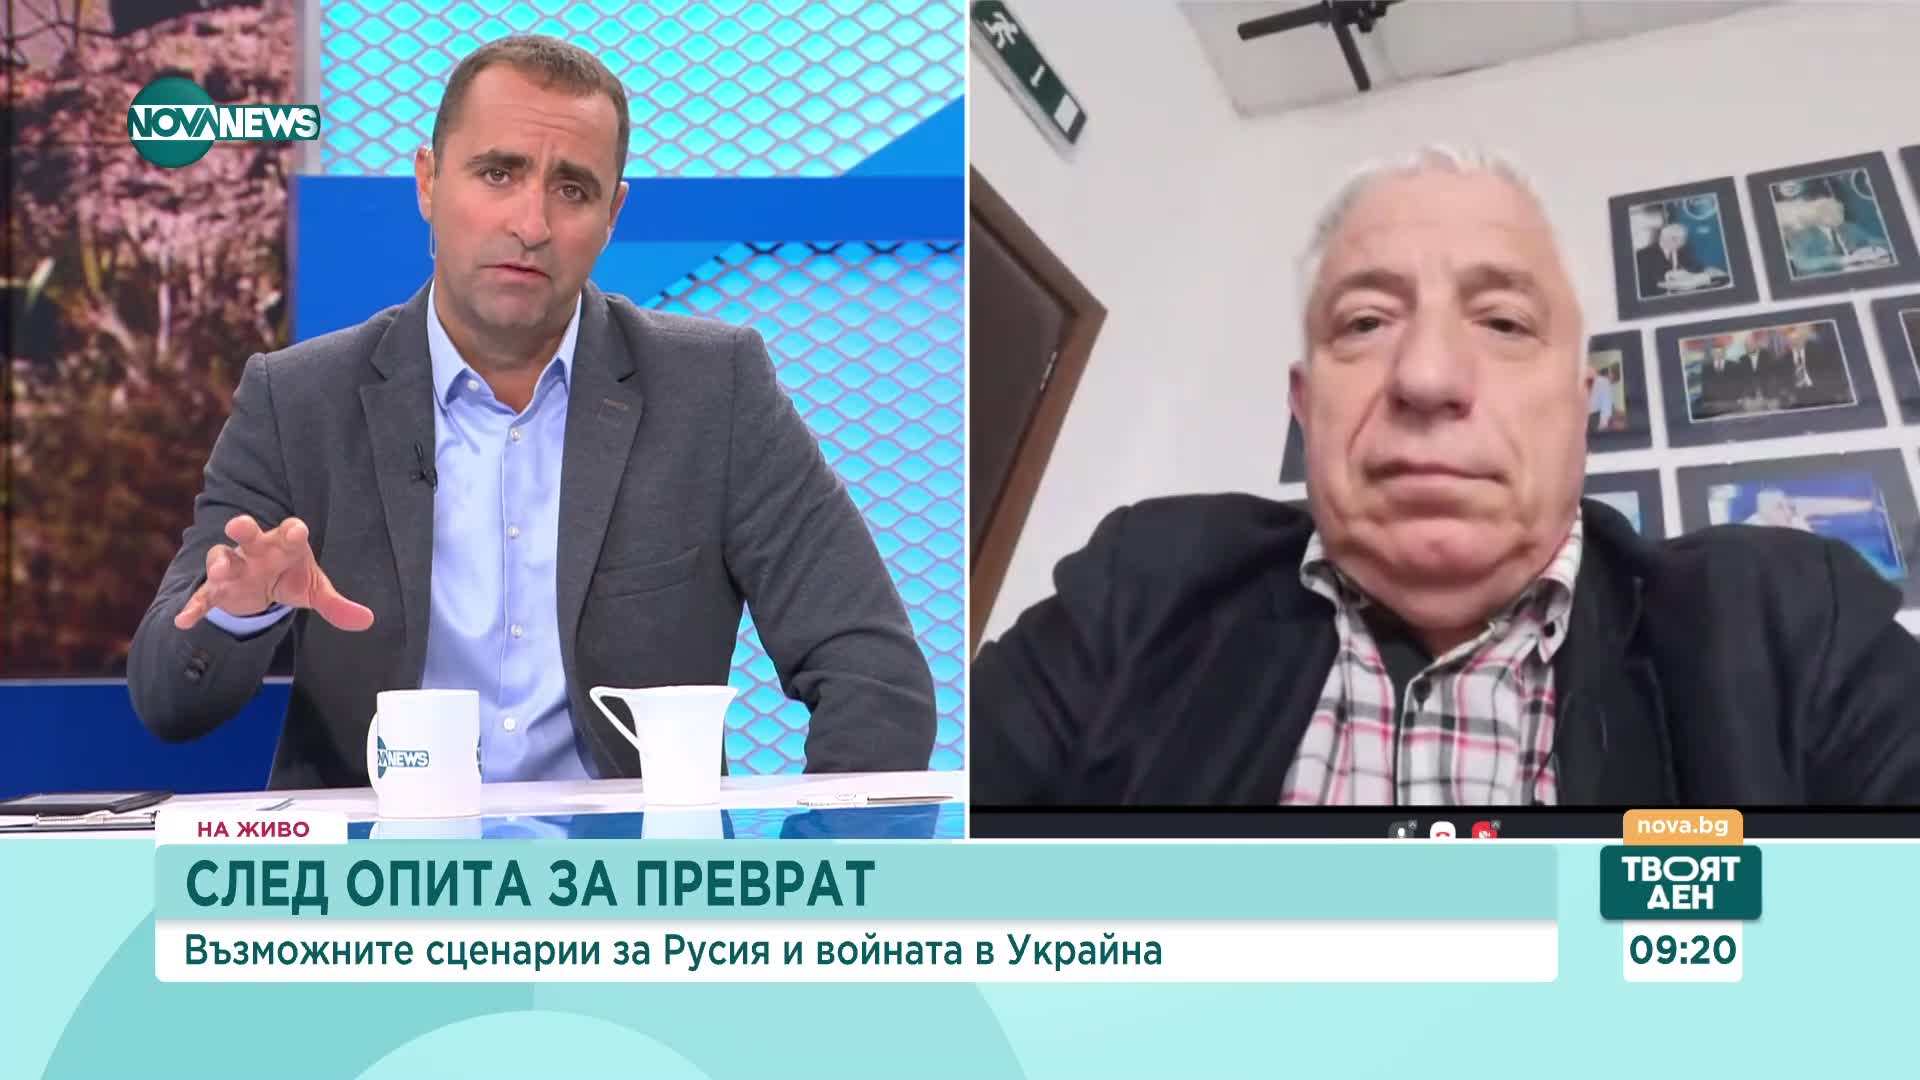 Валерий Тодоров: Ходът на Пригожин едва ли е случаен